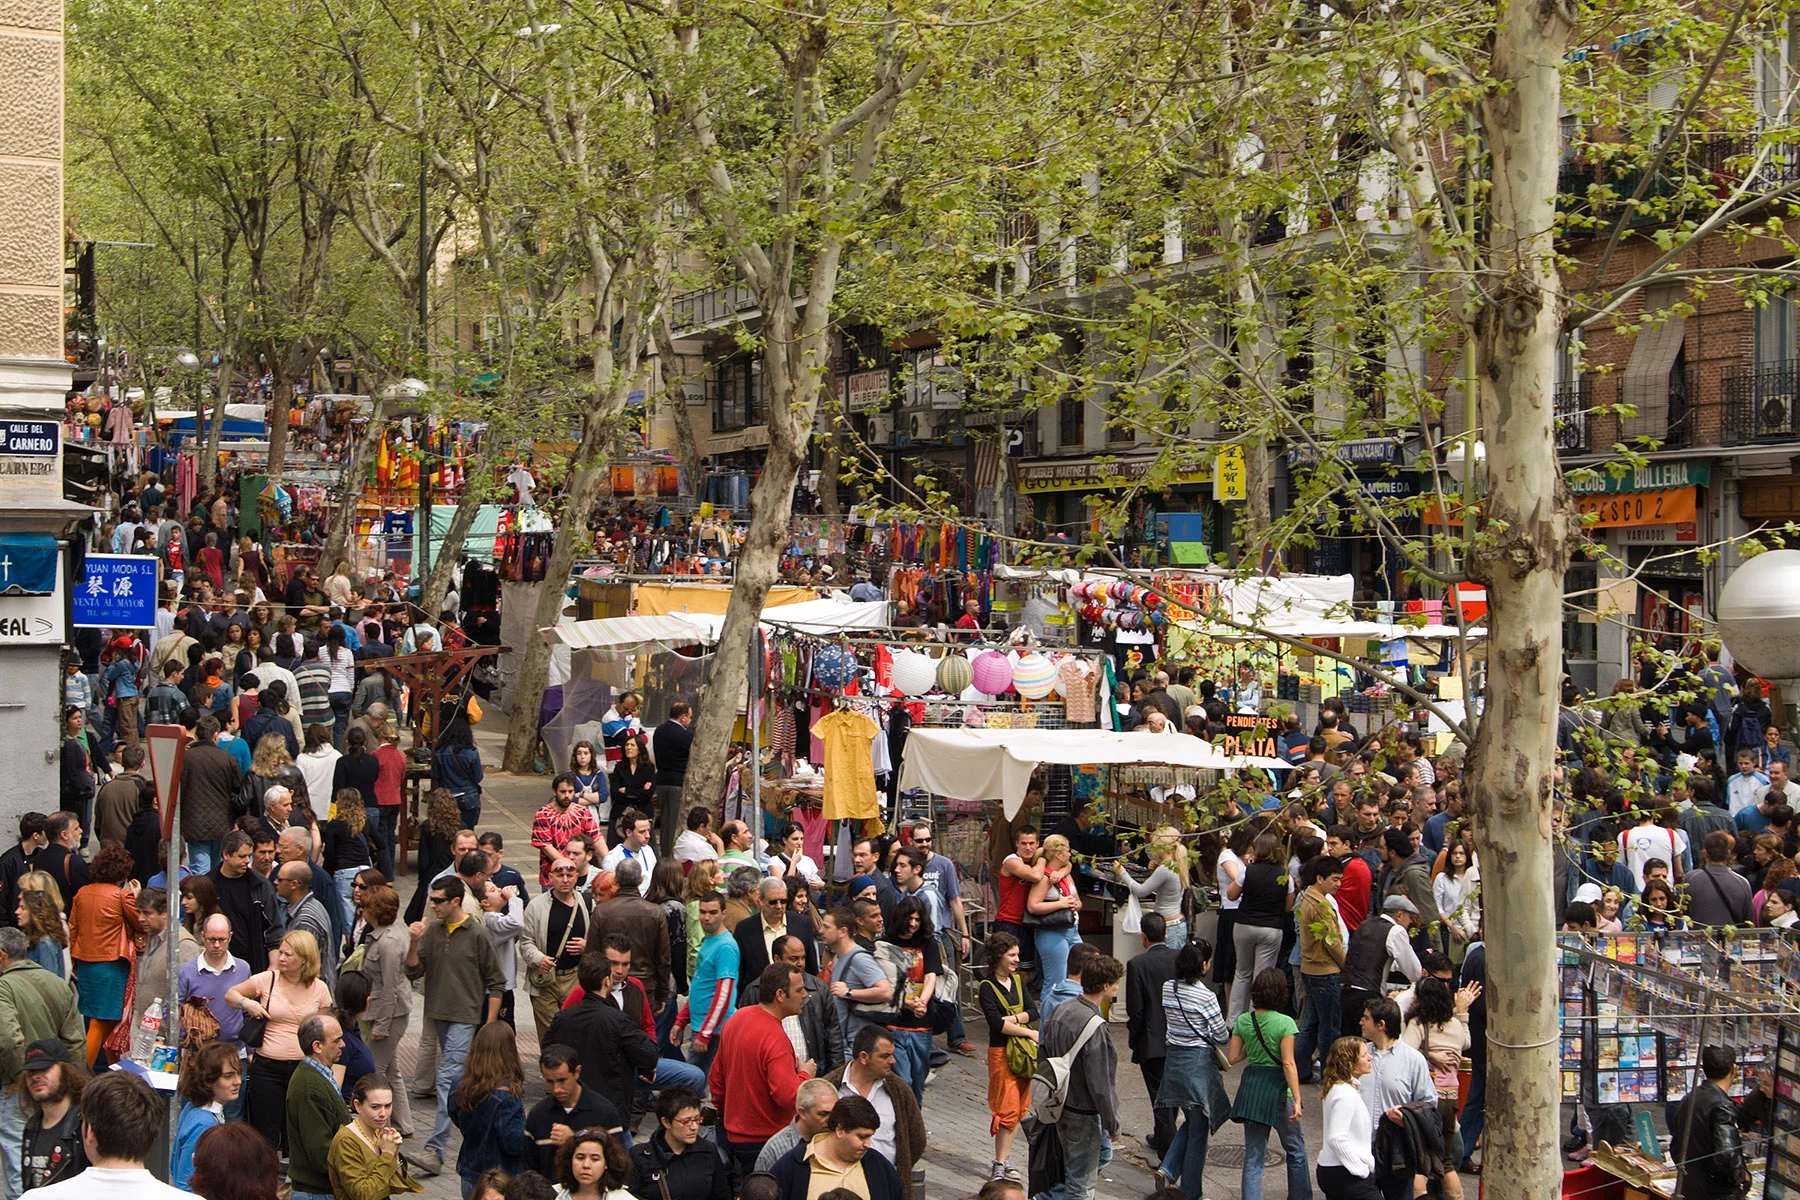 El Rastro flea market in Madrid